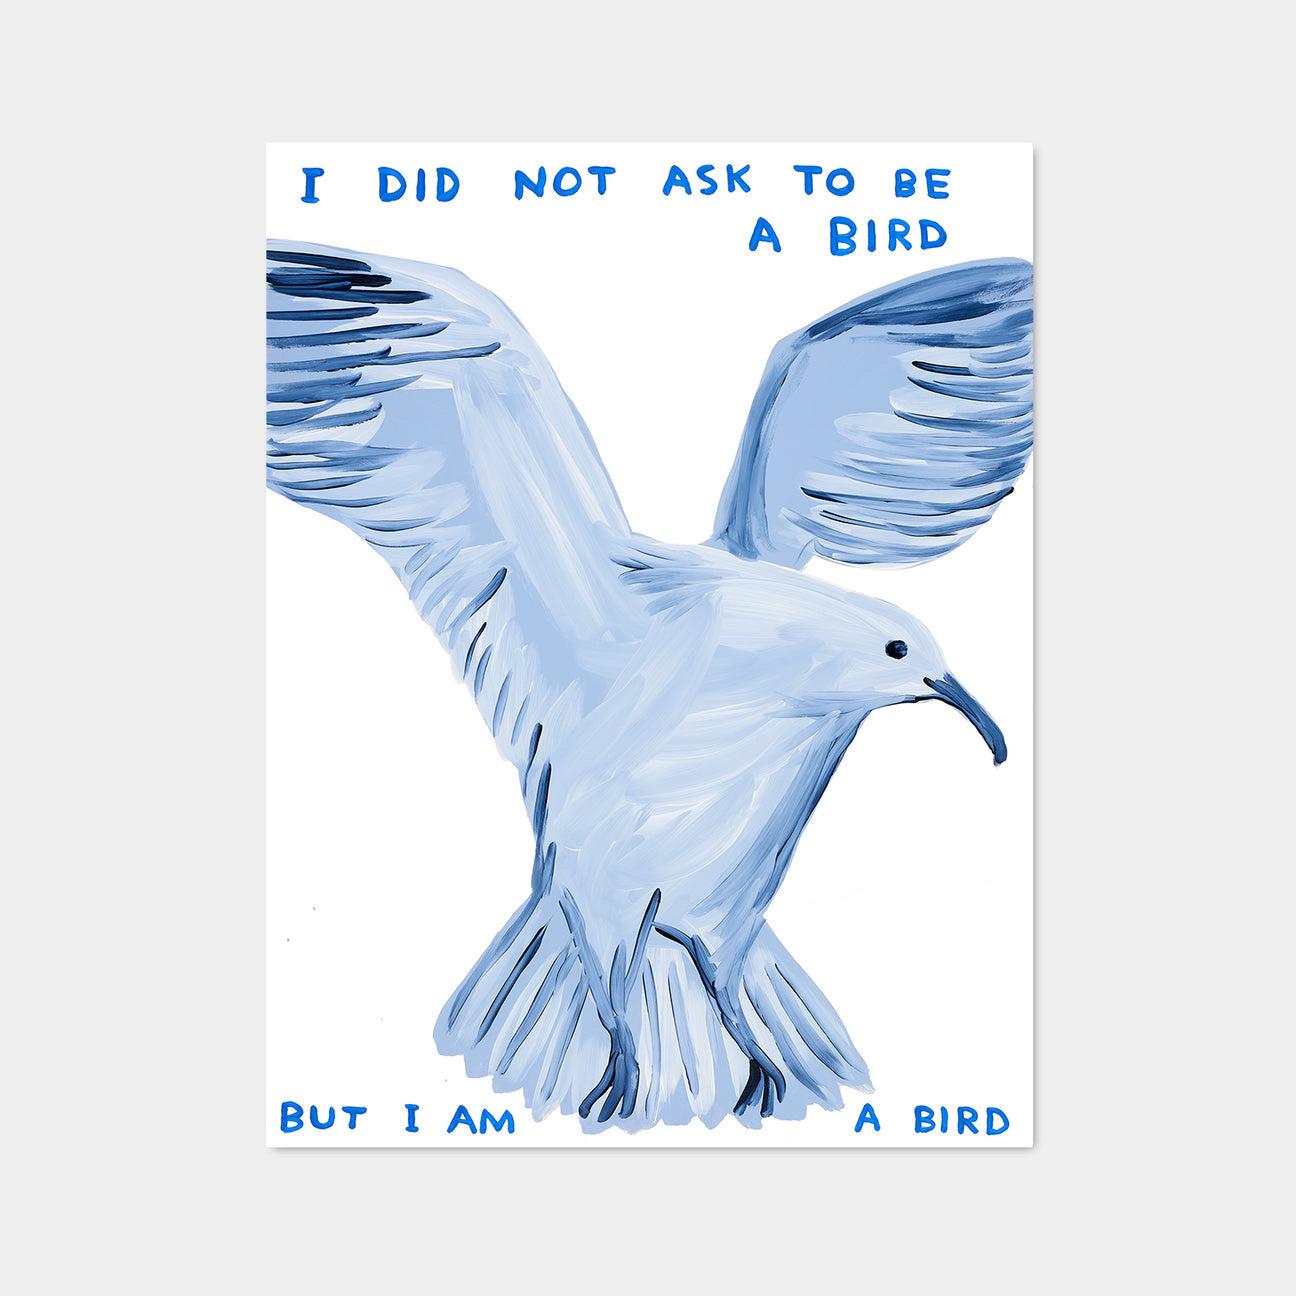 David Shrigley, Ich habe nicht gefragt, ein Vogel zu sein, 2021

Offset-Lithographie
Offene Auflage, ungerahmt 
60 x 80 cm (23,62 x 31,5 Zoll) 
Gedruckt auf 200g Munken Lynx Papier bei Narayana Press in Dänemark 

Dieser Druck basiert auf dem